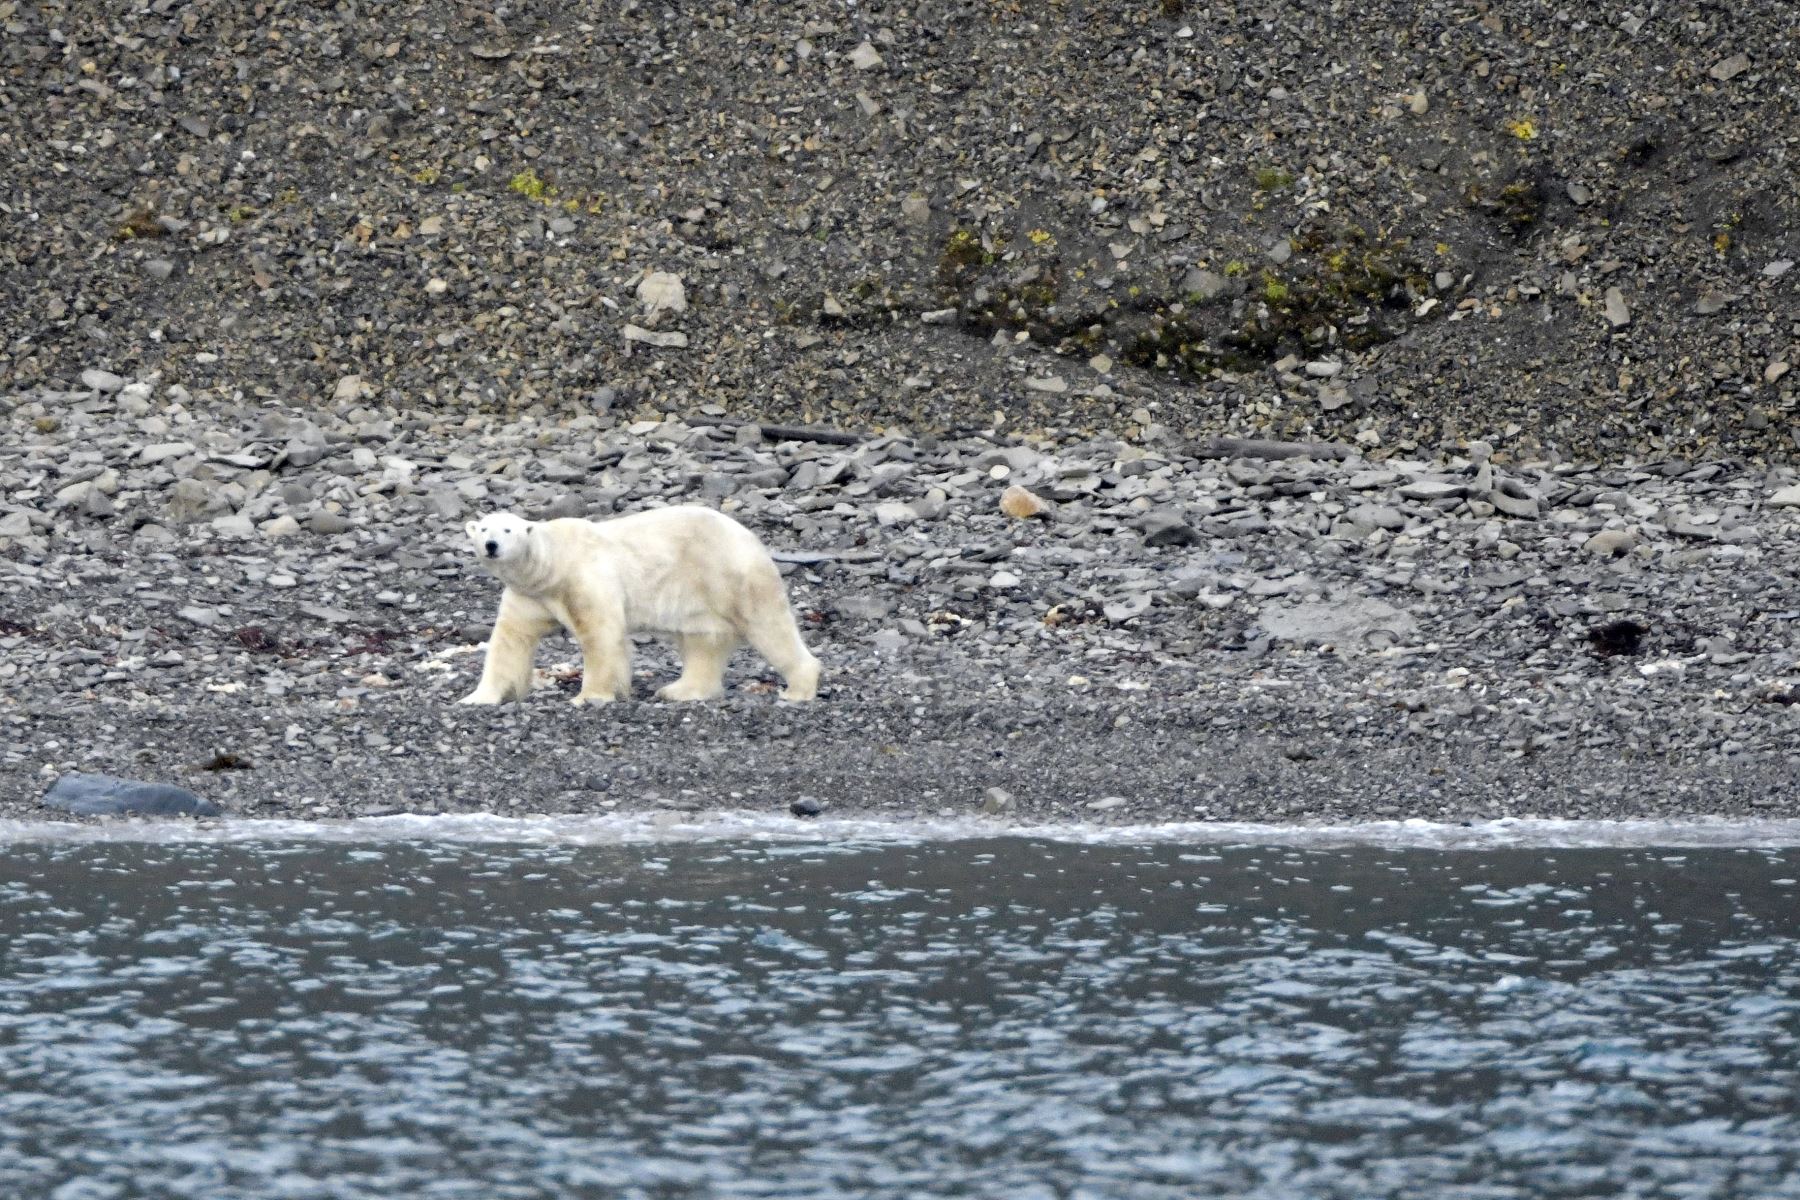 A diferencia de otros osos polares, se descubrió que estos son hogareños y rara vez se alejan mucho para cazar. Foto: AFP